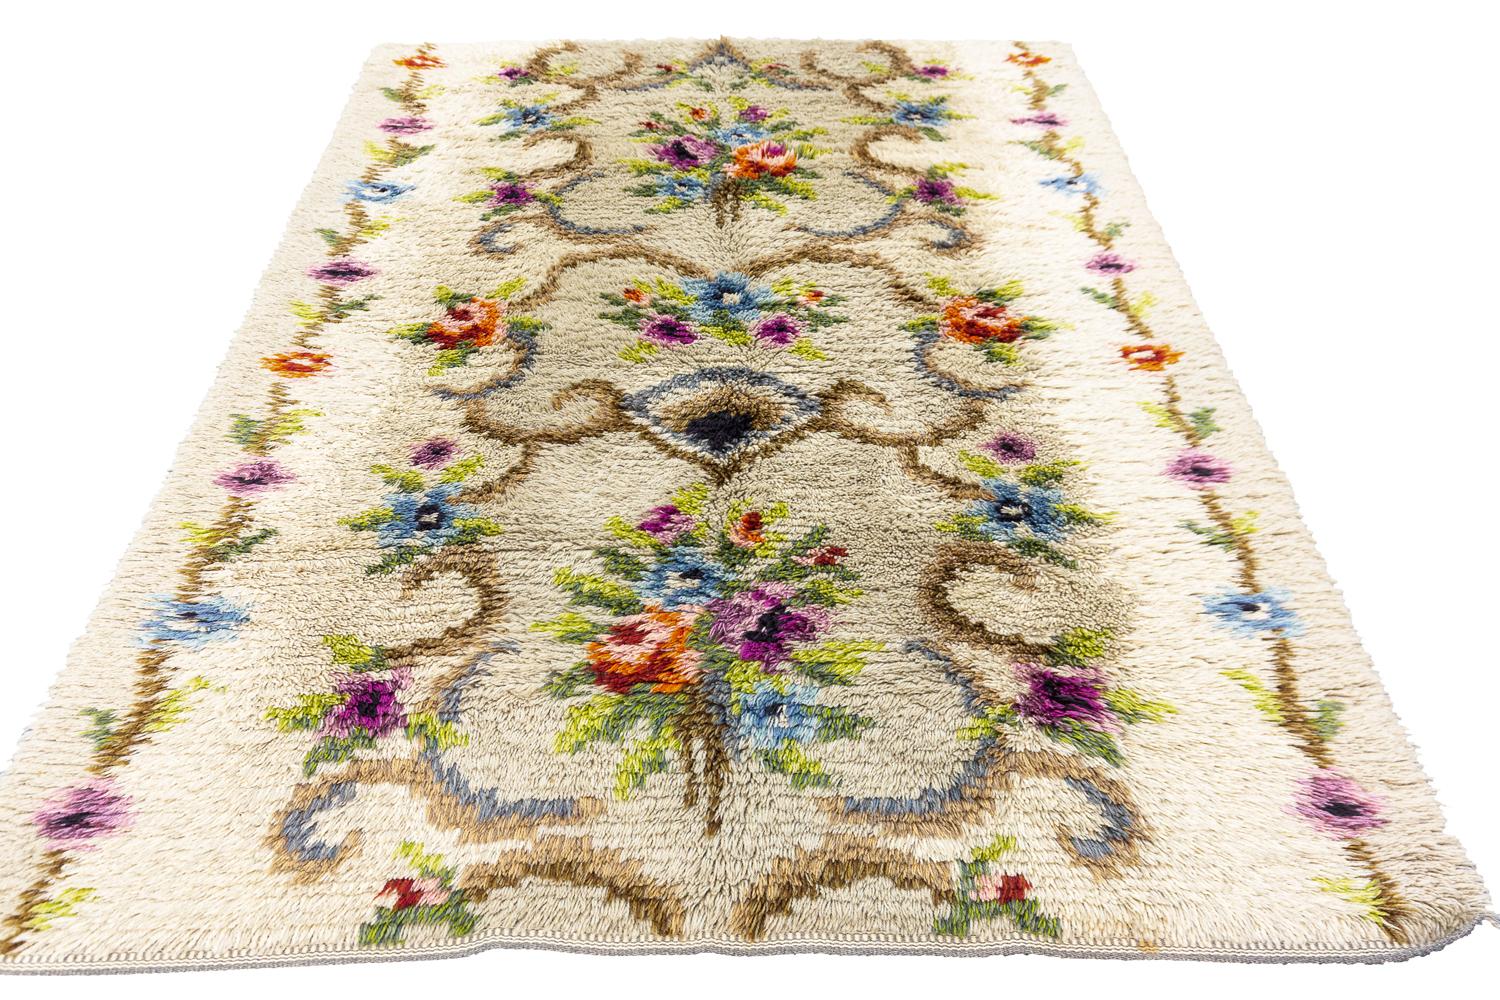 Il s'agit d'un tapis suédois vintage tissé au milieu du 20e siècle, entre 1950 et 1970, qui mesure 200 x 145 cm. Ce tapis présente un motif floral sur toute sa surface avec deux bouquets enfermés dans des crochets. Il présente des fleurs polychromes